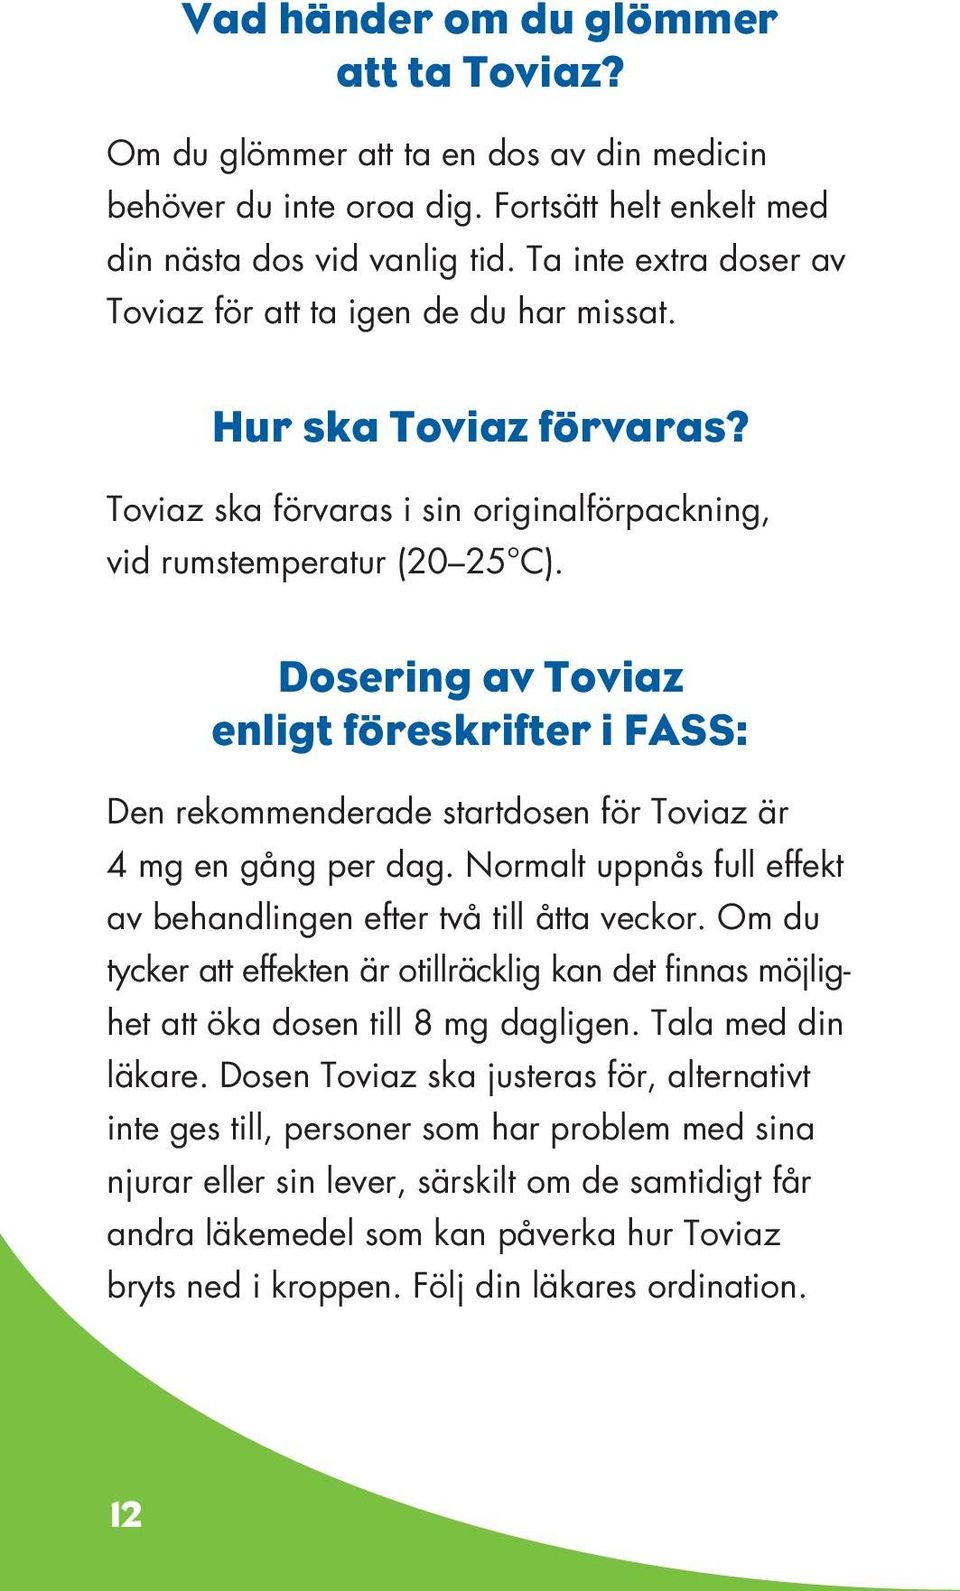 Dosering av Toviaz enligt föreskrifter i FASS: Den rekommenderade startdosen för Toviaz är 4 mg en gång per dag. Normalt uppnås full effekt av behandlingen efter två till åtta veckor.